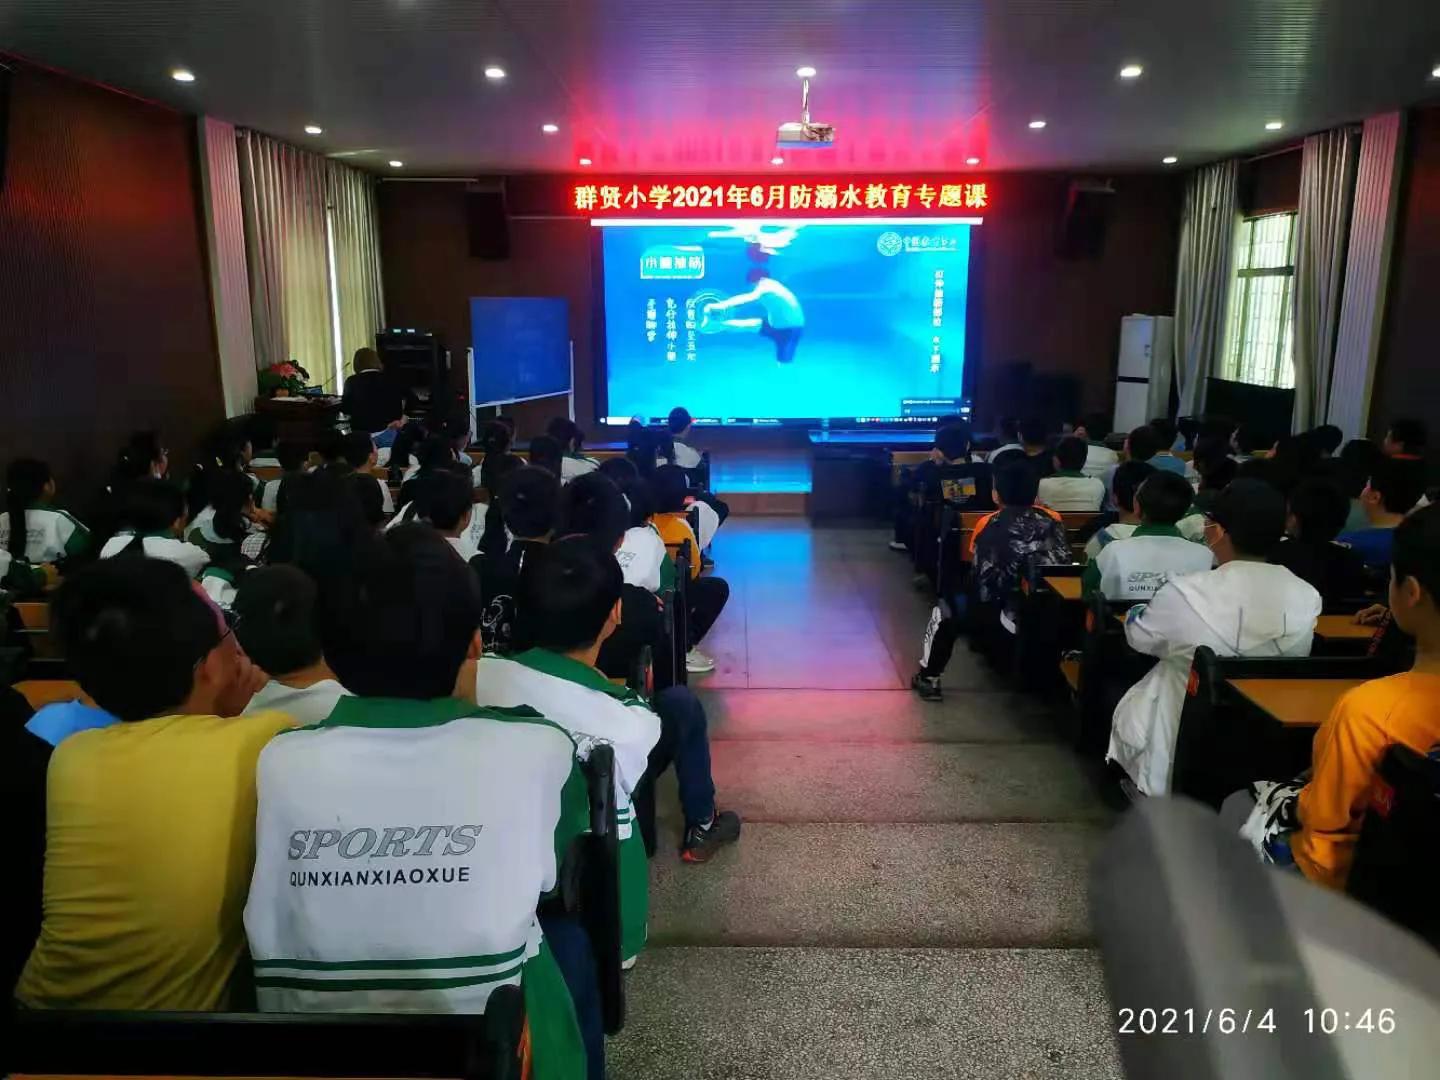 隆回县群贤小学：组织学生观看预防溺水教育专题片